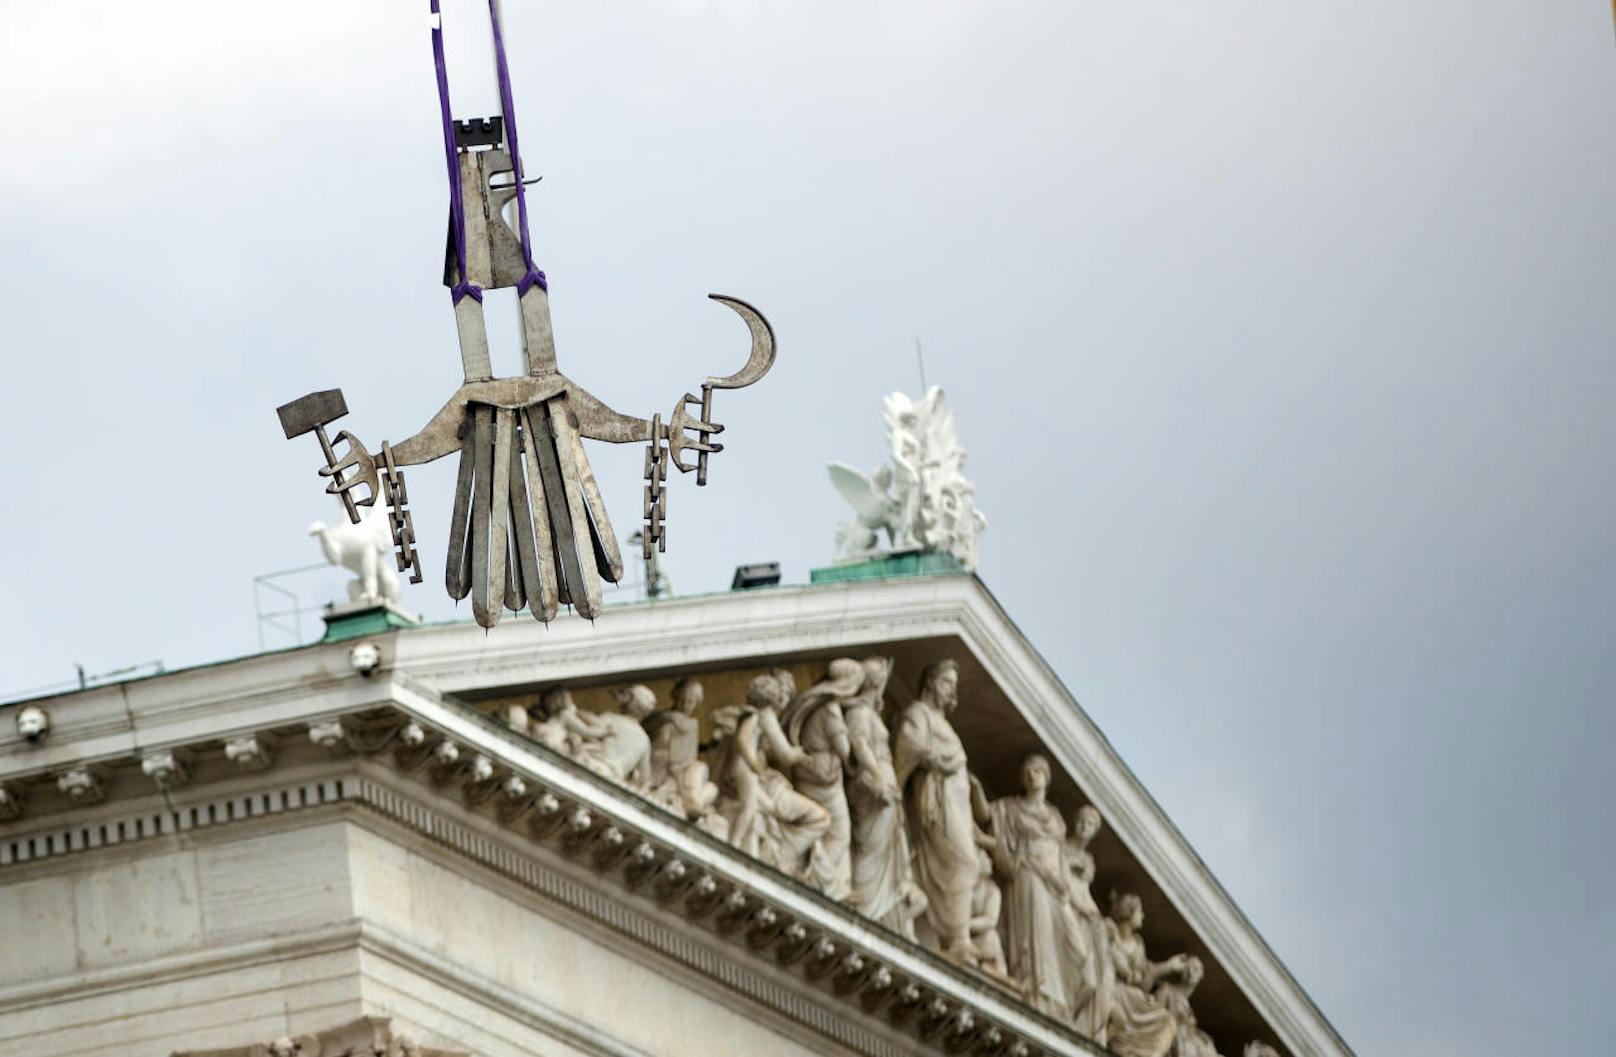 Abtransport des Wappenadlers am Mittwoch, 13. Juni 2018, im Nationalratssitzungssaal im Parlament in Wien.